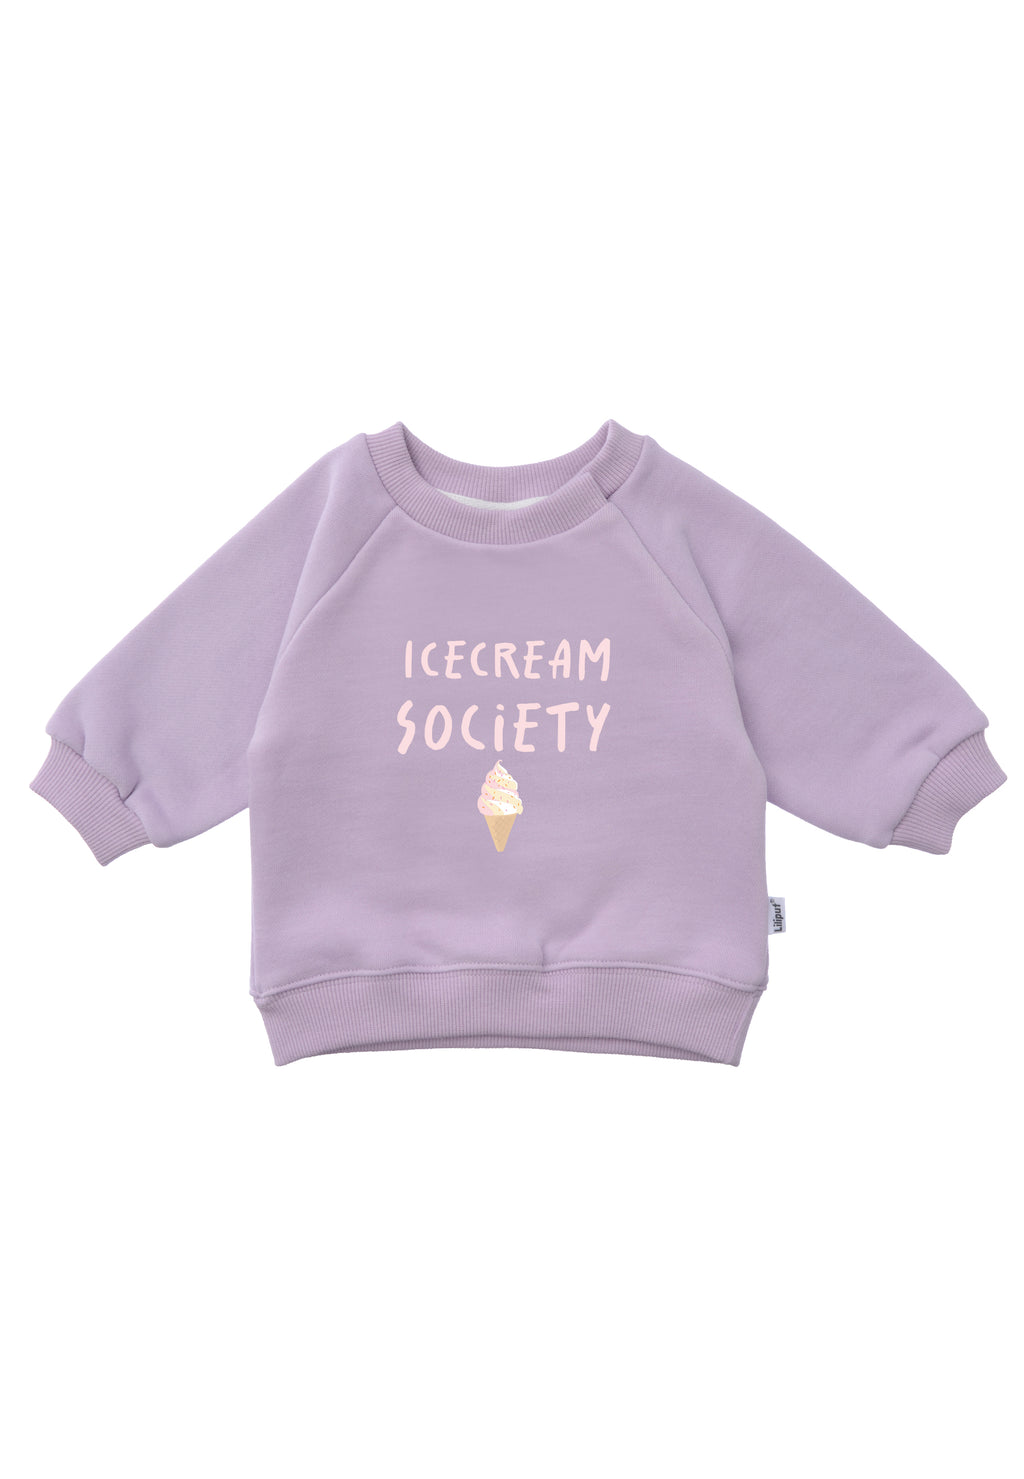 Sweatshirt in flieder mit Raglanämrlen und Ribbündchenund dem Spruch "icecream society".